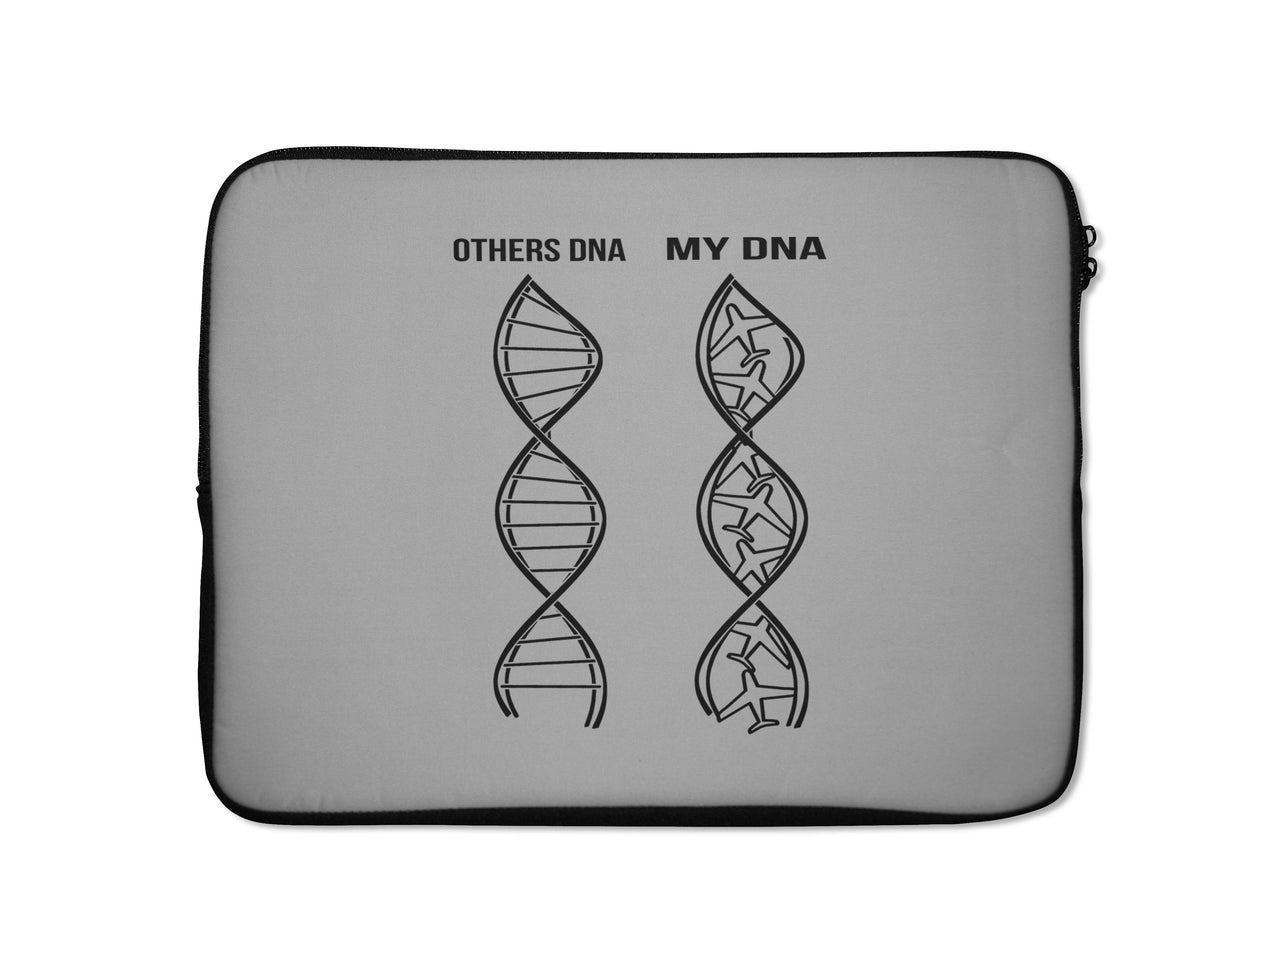 Aviation DNA Designed Laptop & Tablet Cases